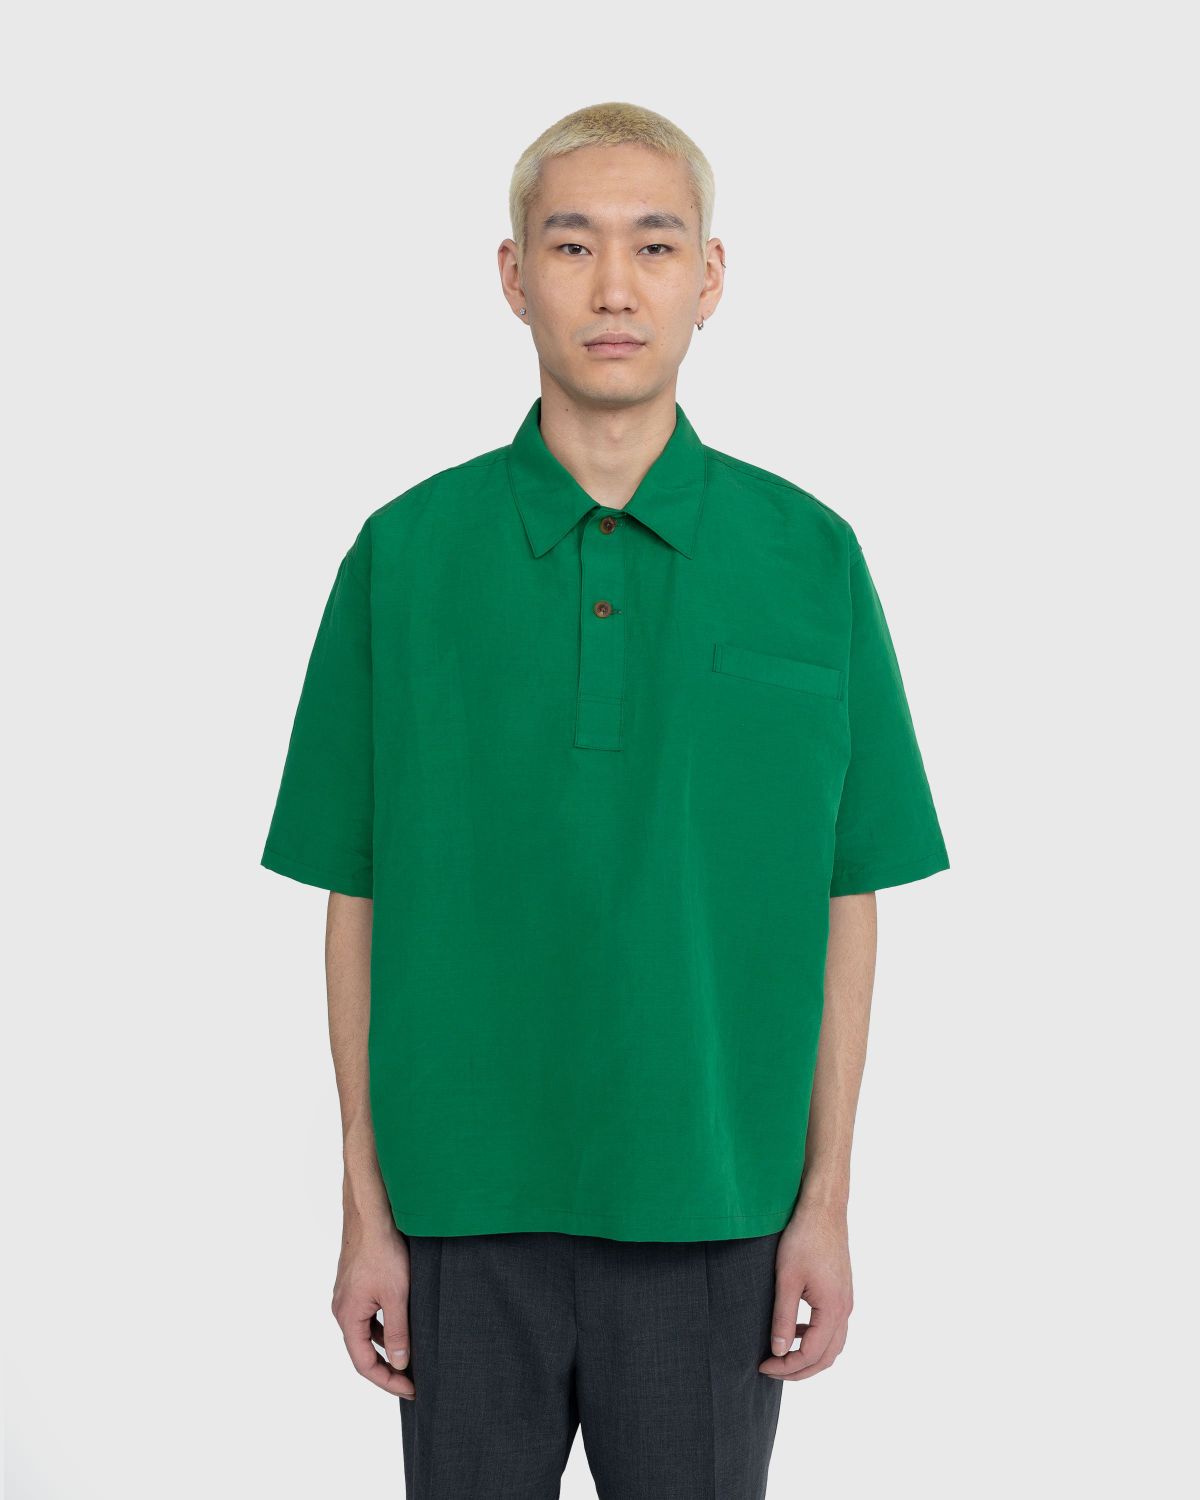 AURALLEE Finx cotton shirt green